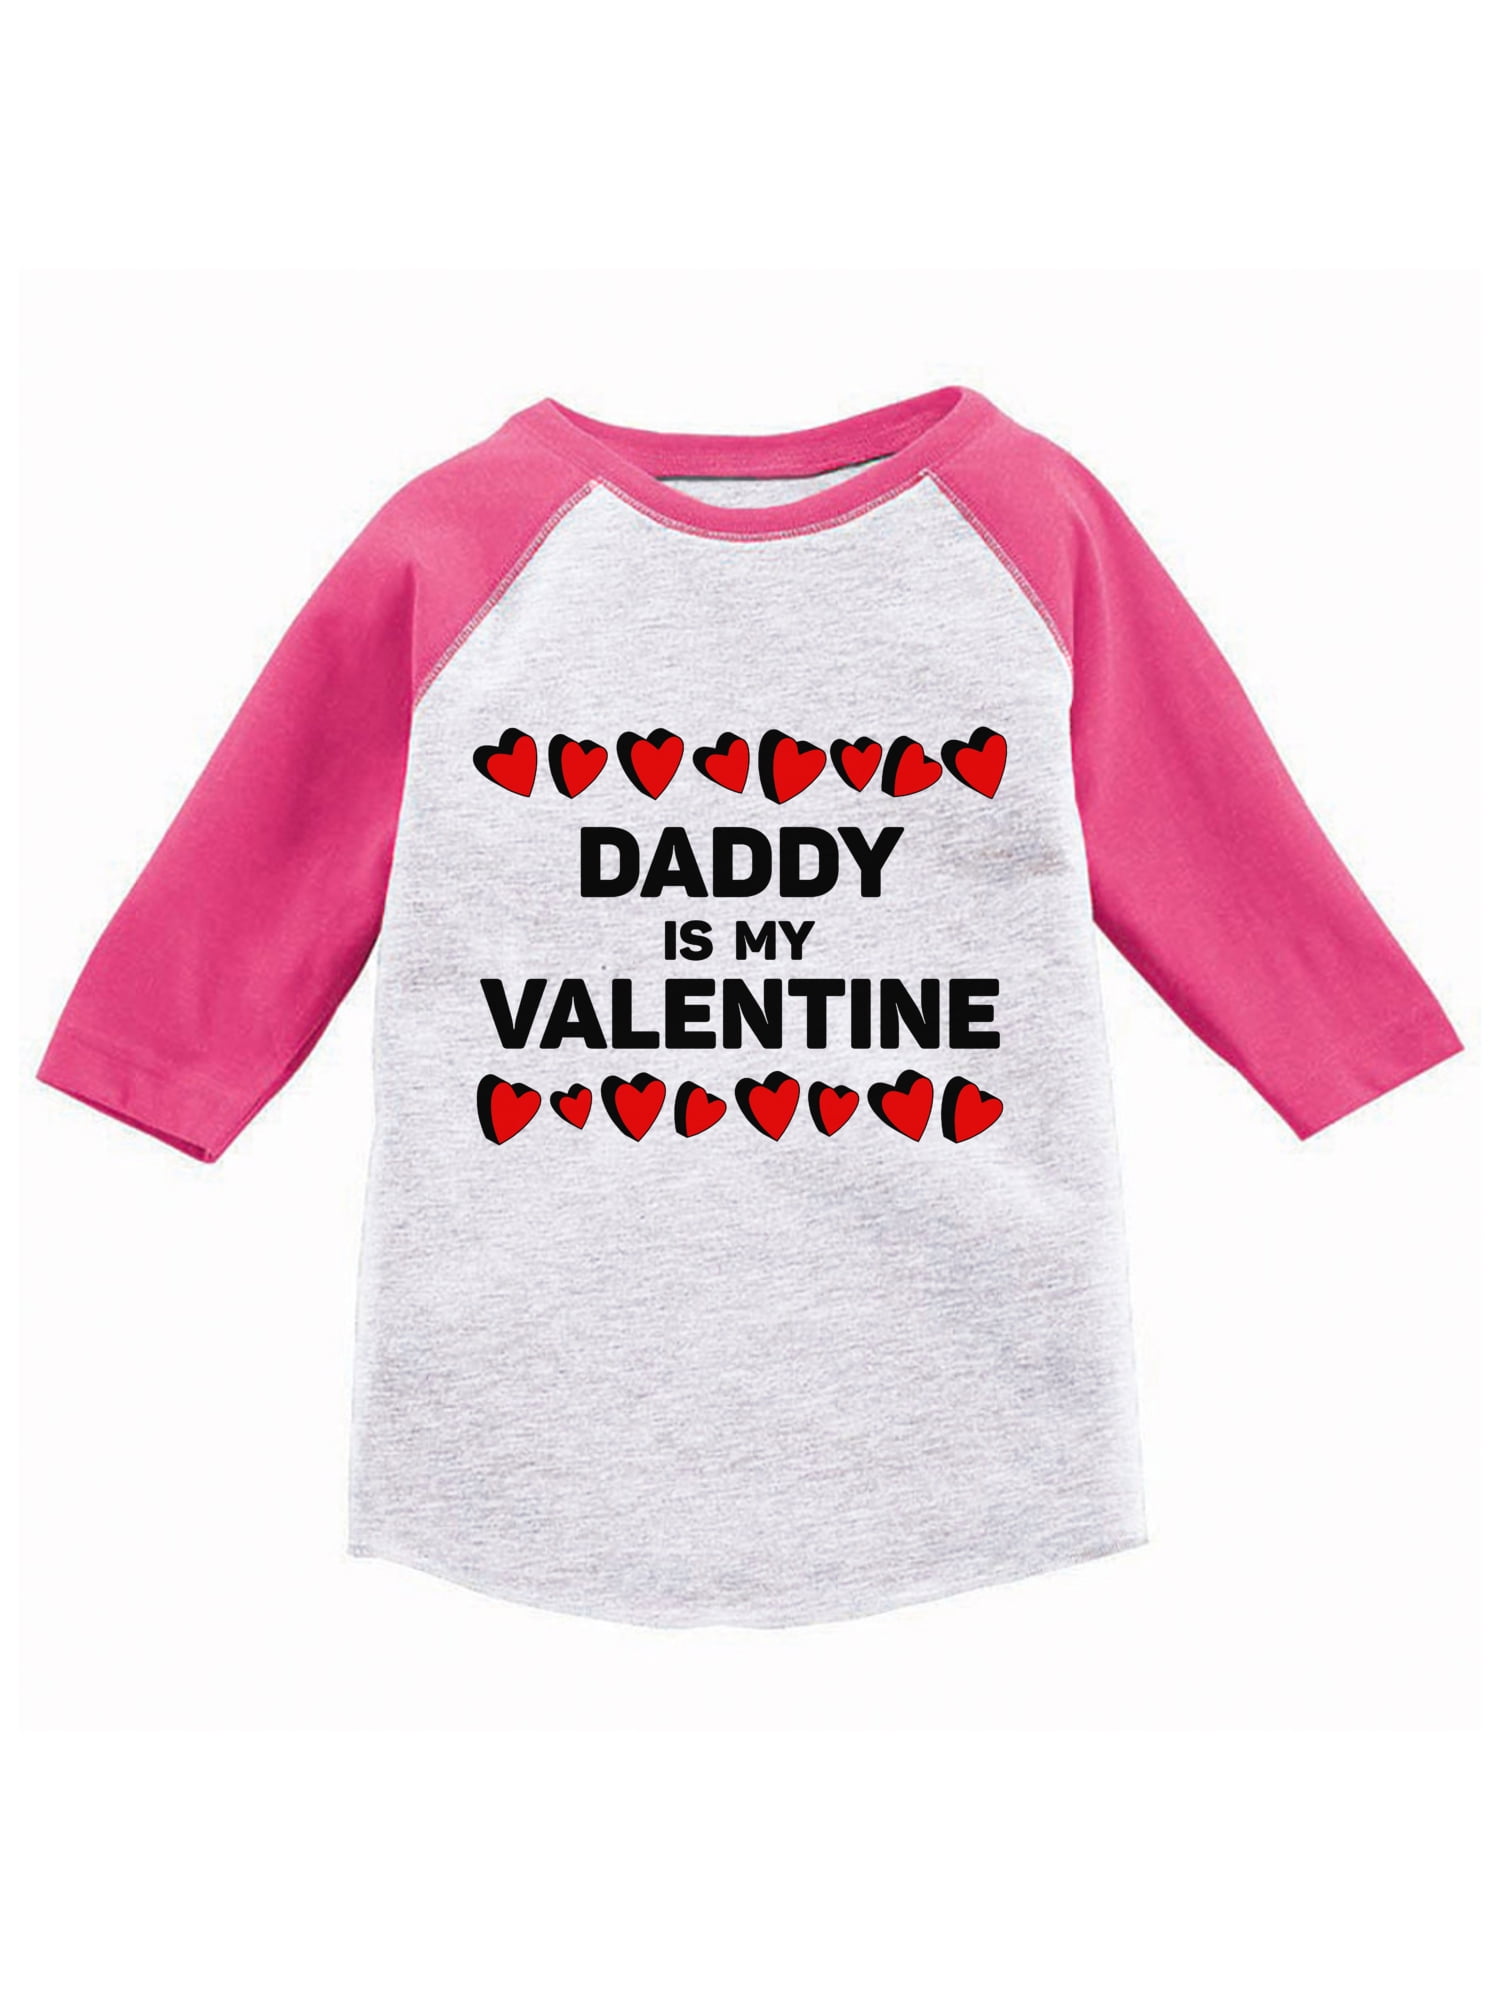 Valentine Graphic Tee Toddler Valentine Valentine Sweater Valentine Sweater for Kids Dad's Little Love © Kid Valentine Shirt